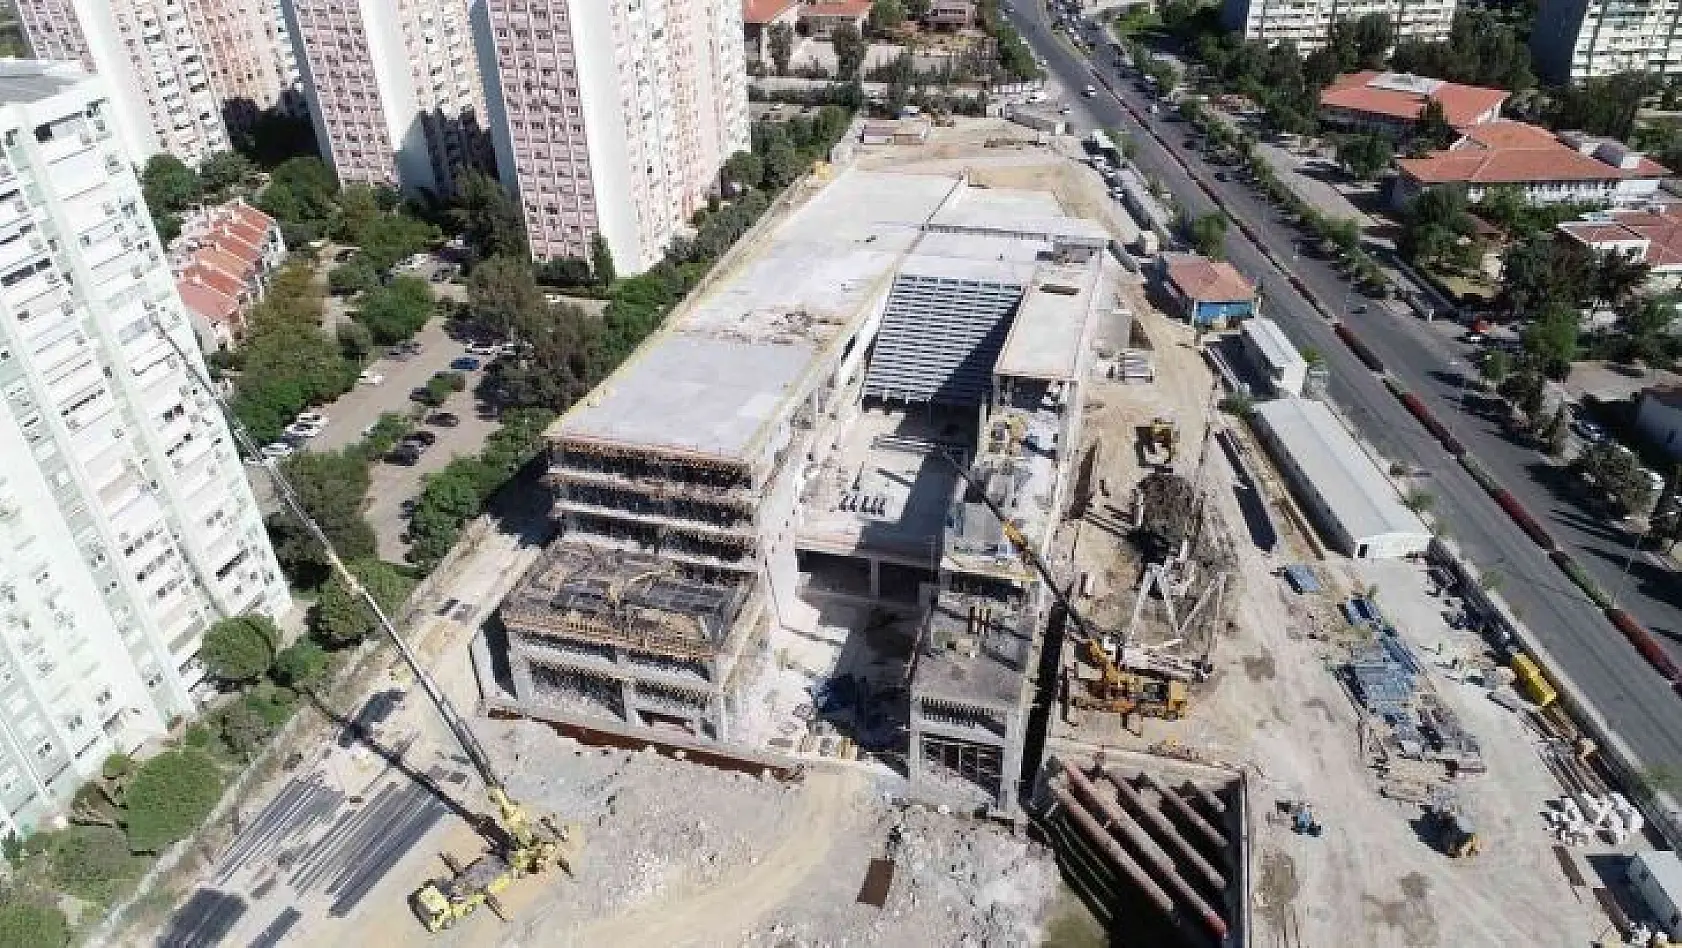 İzmir Opera Binası'nın yüzde 45'i tamamlandı